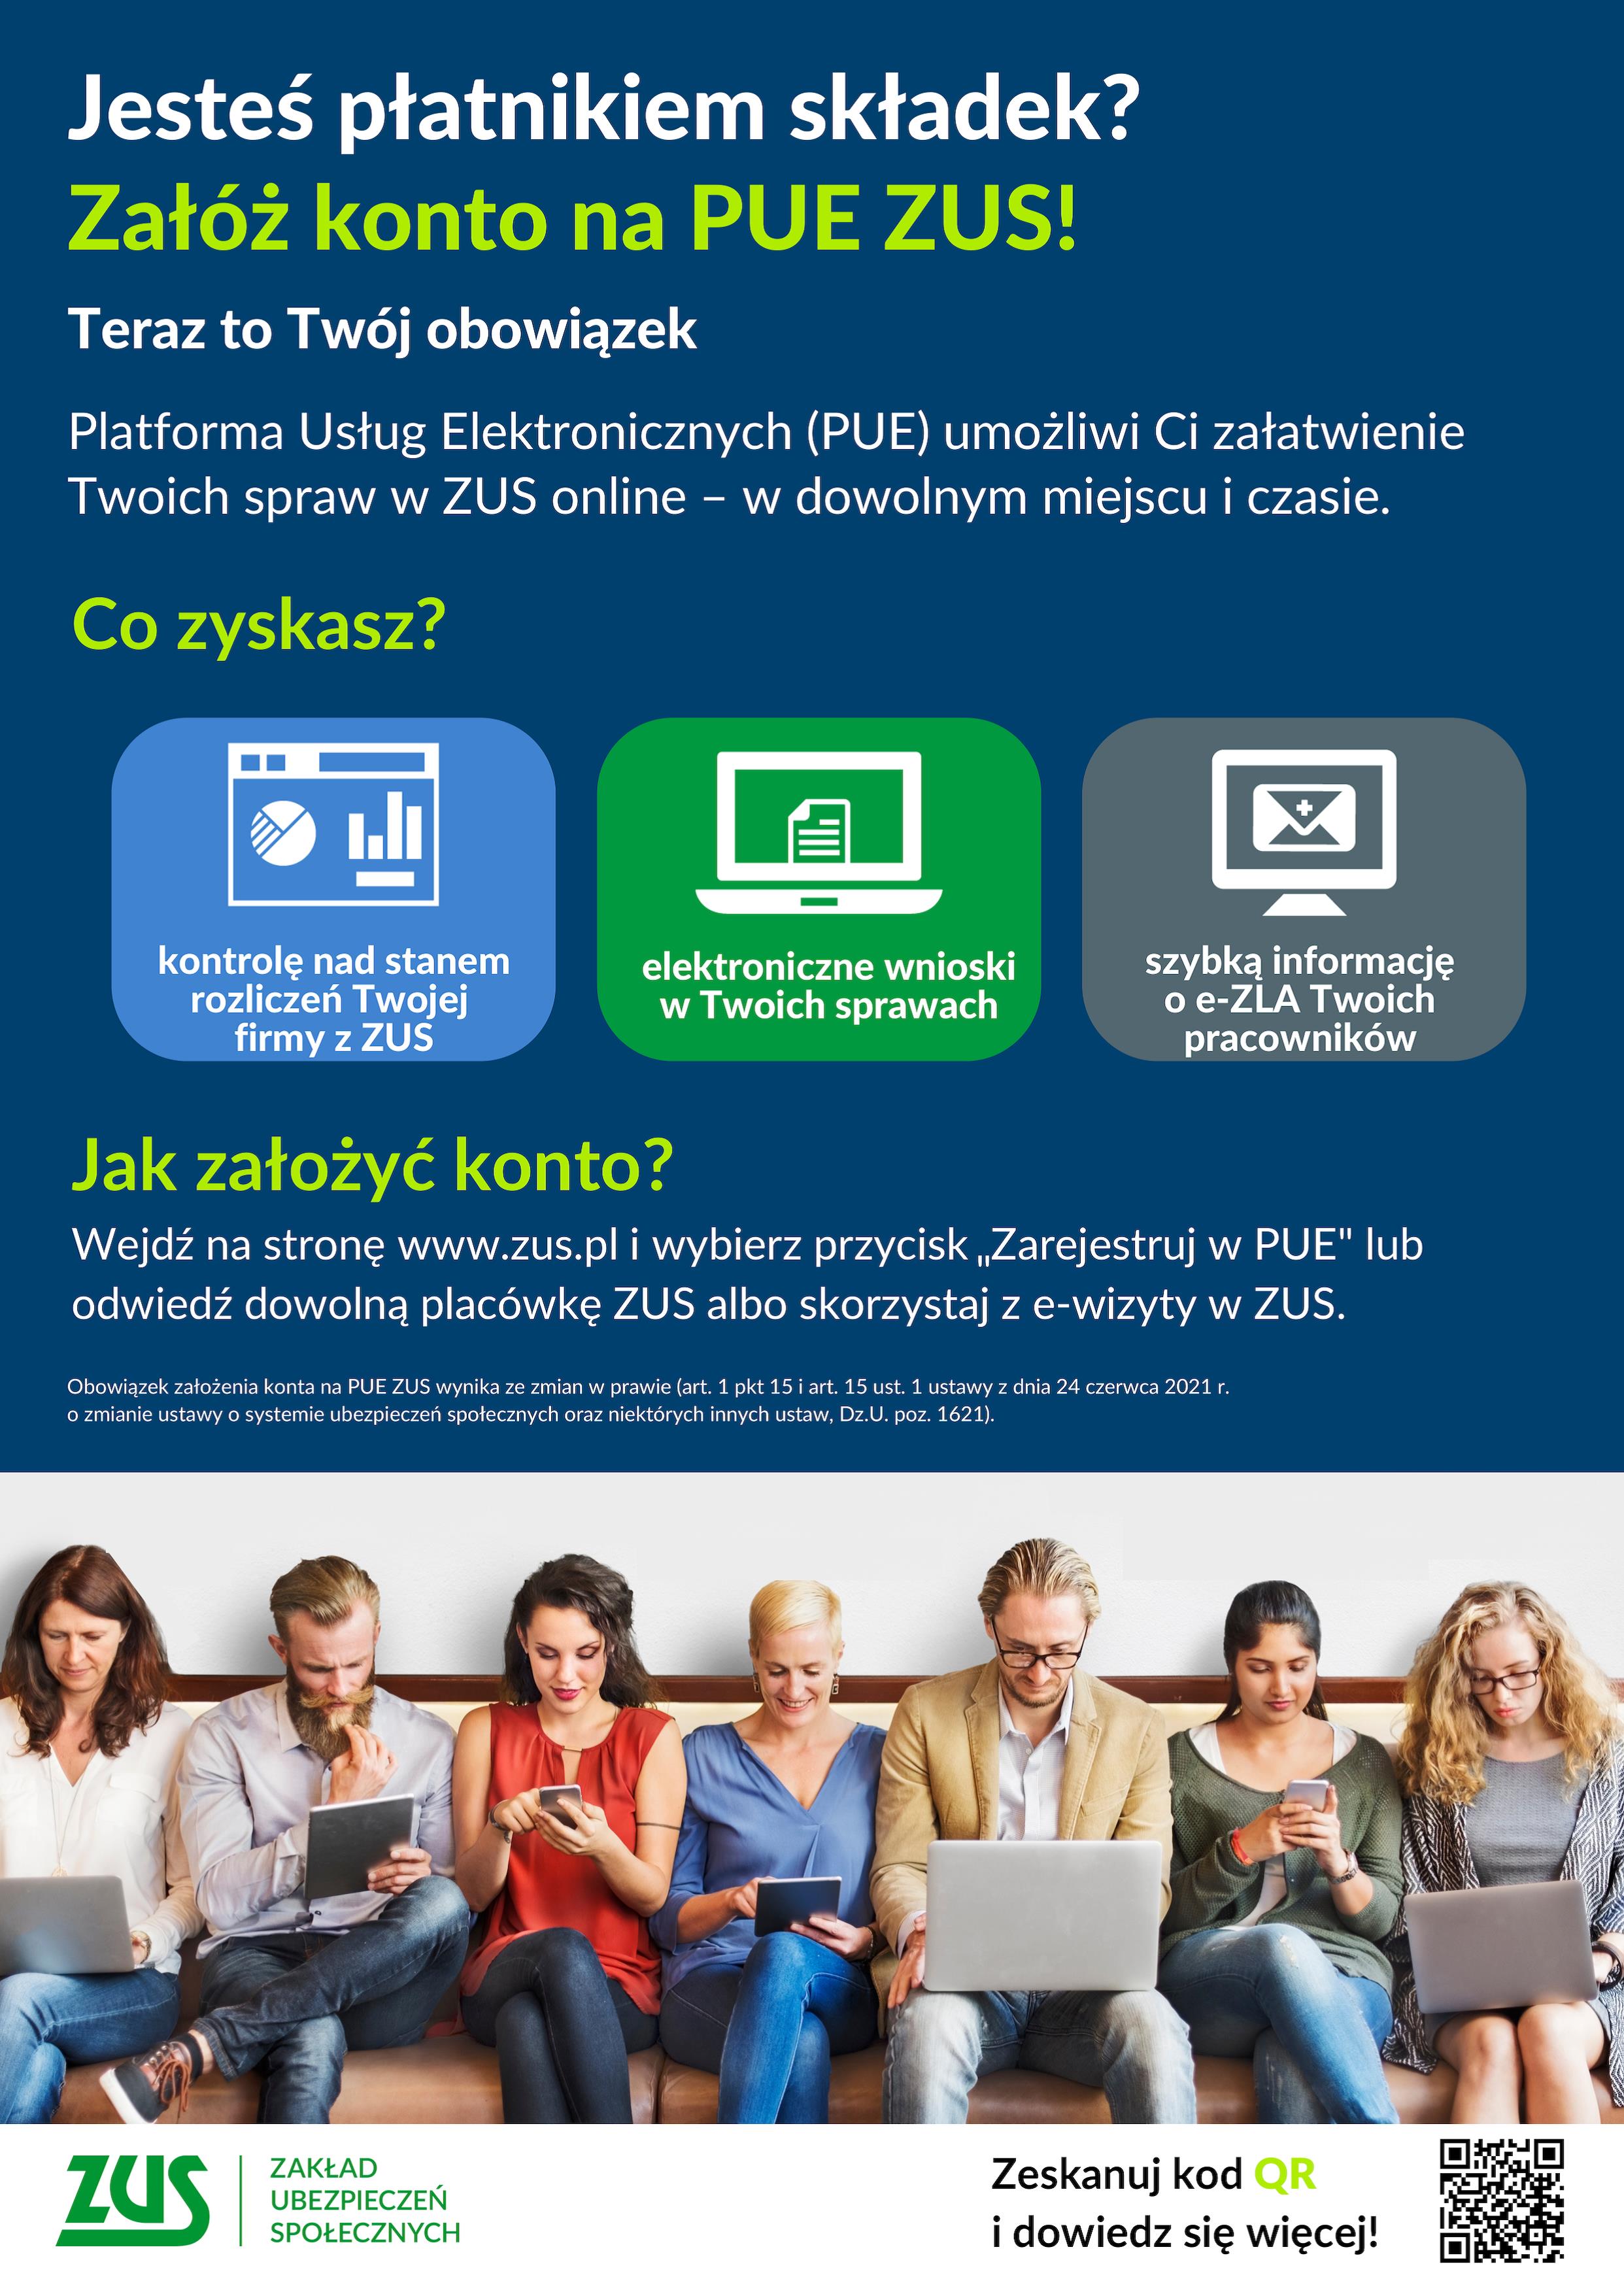 plakat pue zus plakat przedstawiający 7 osób przy laptopach lub telefonach komórkowych zakładających konto na PUE ZUS, powyżej informacja pisemna jak założyć konto na PUE ZUS